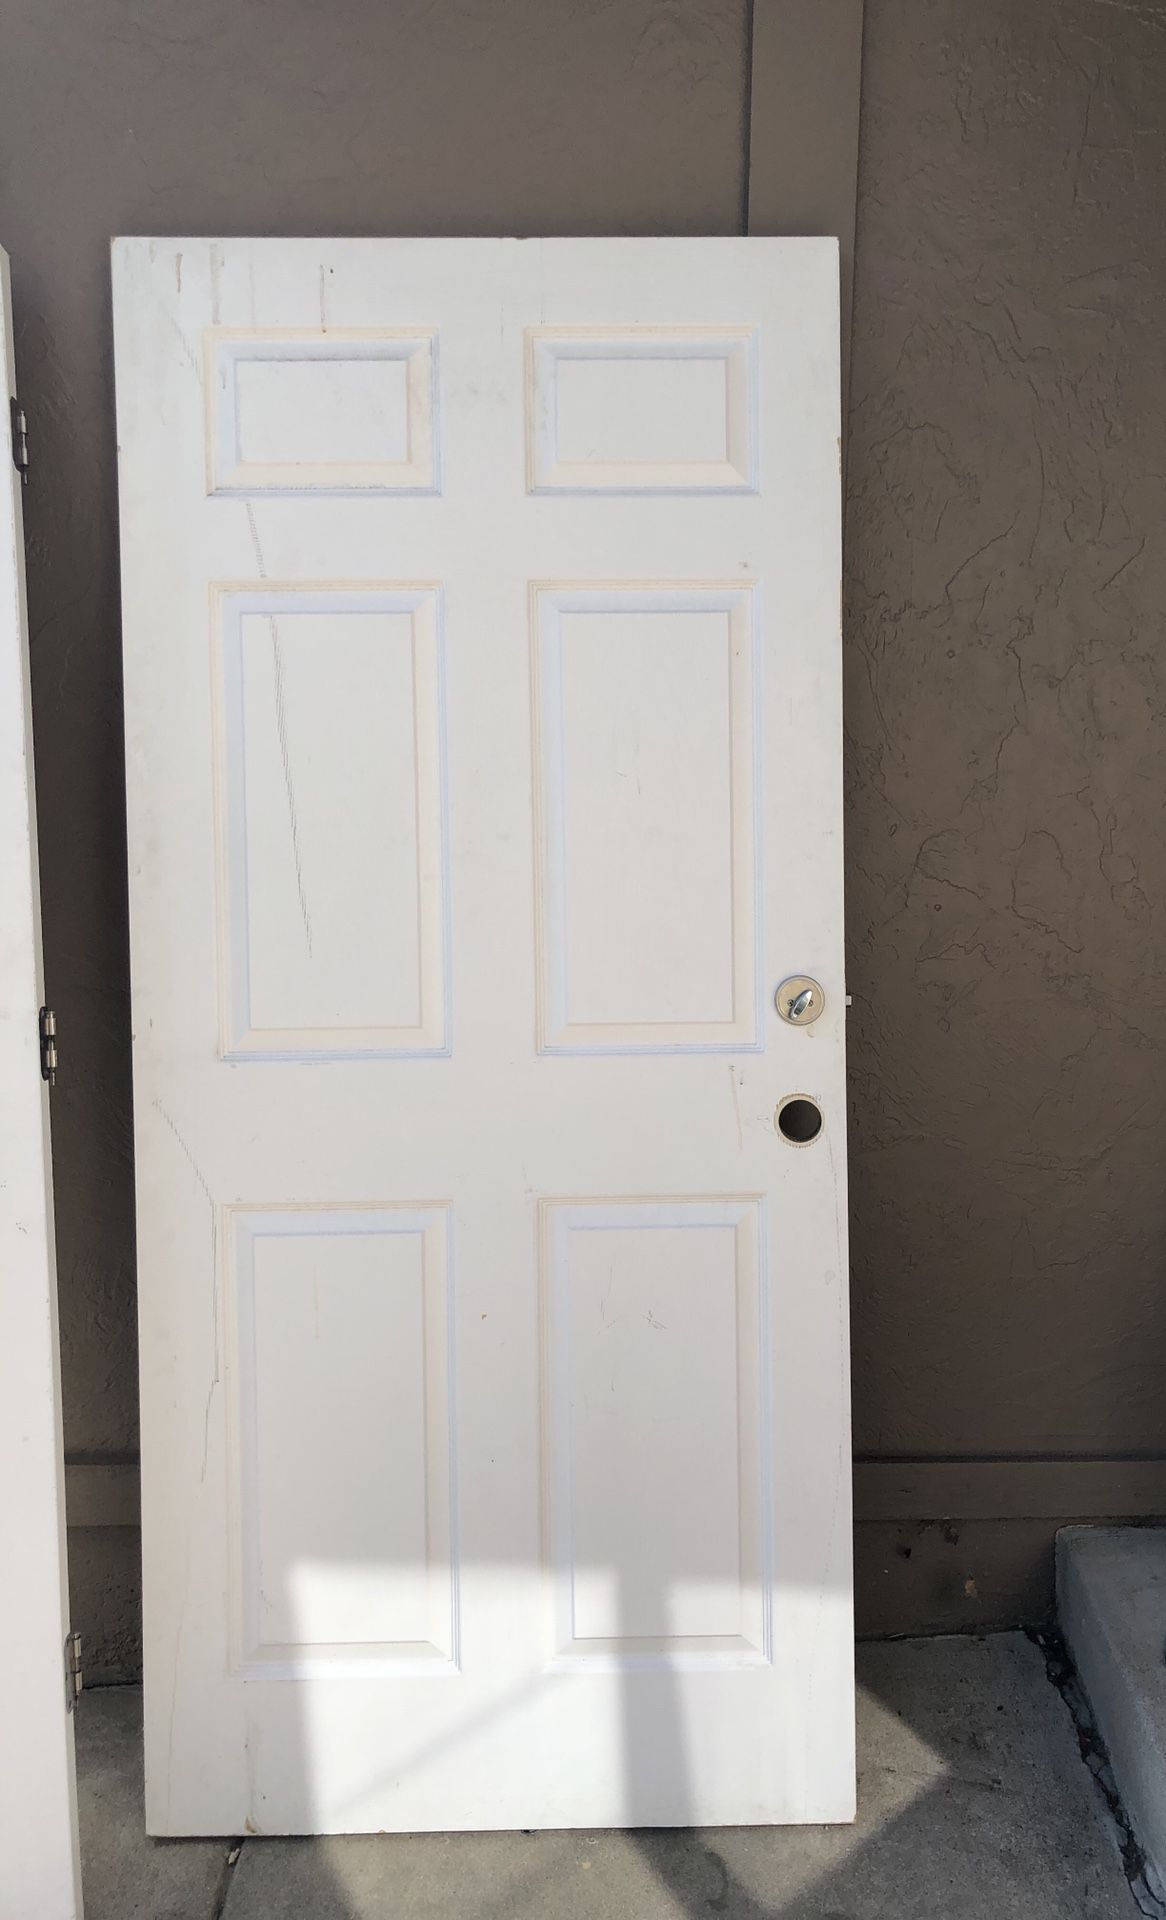 Solid core 6 panel door 35 1/8”W 80” H (no frame)